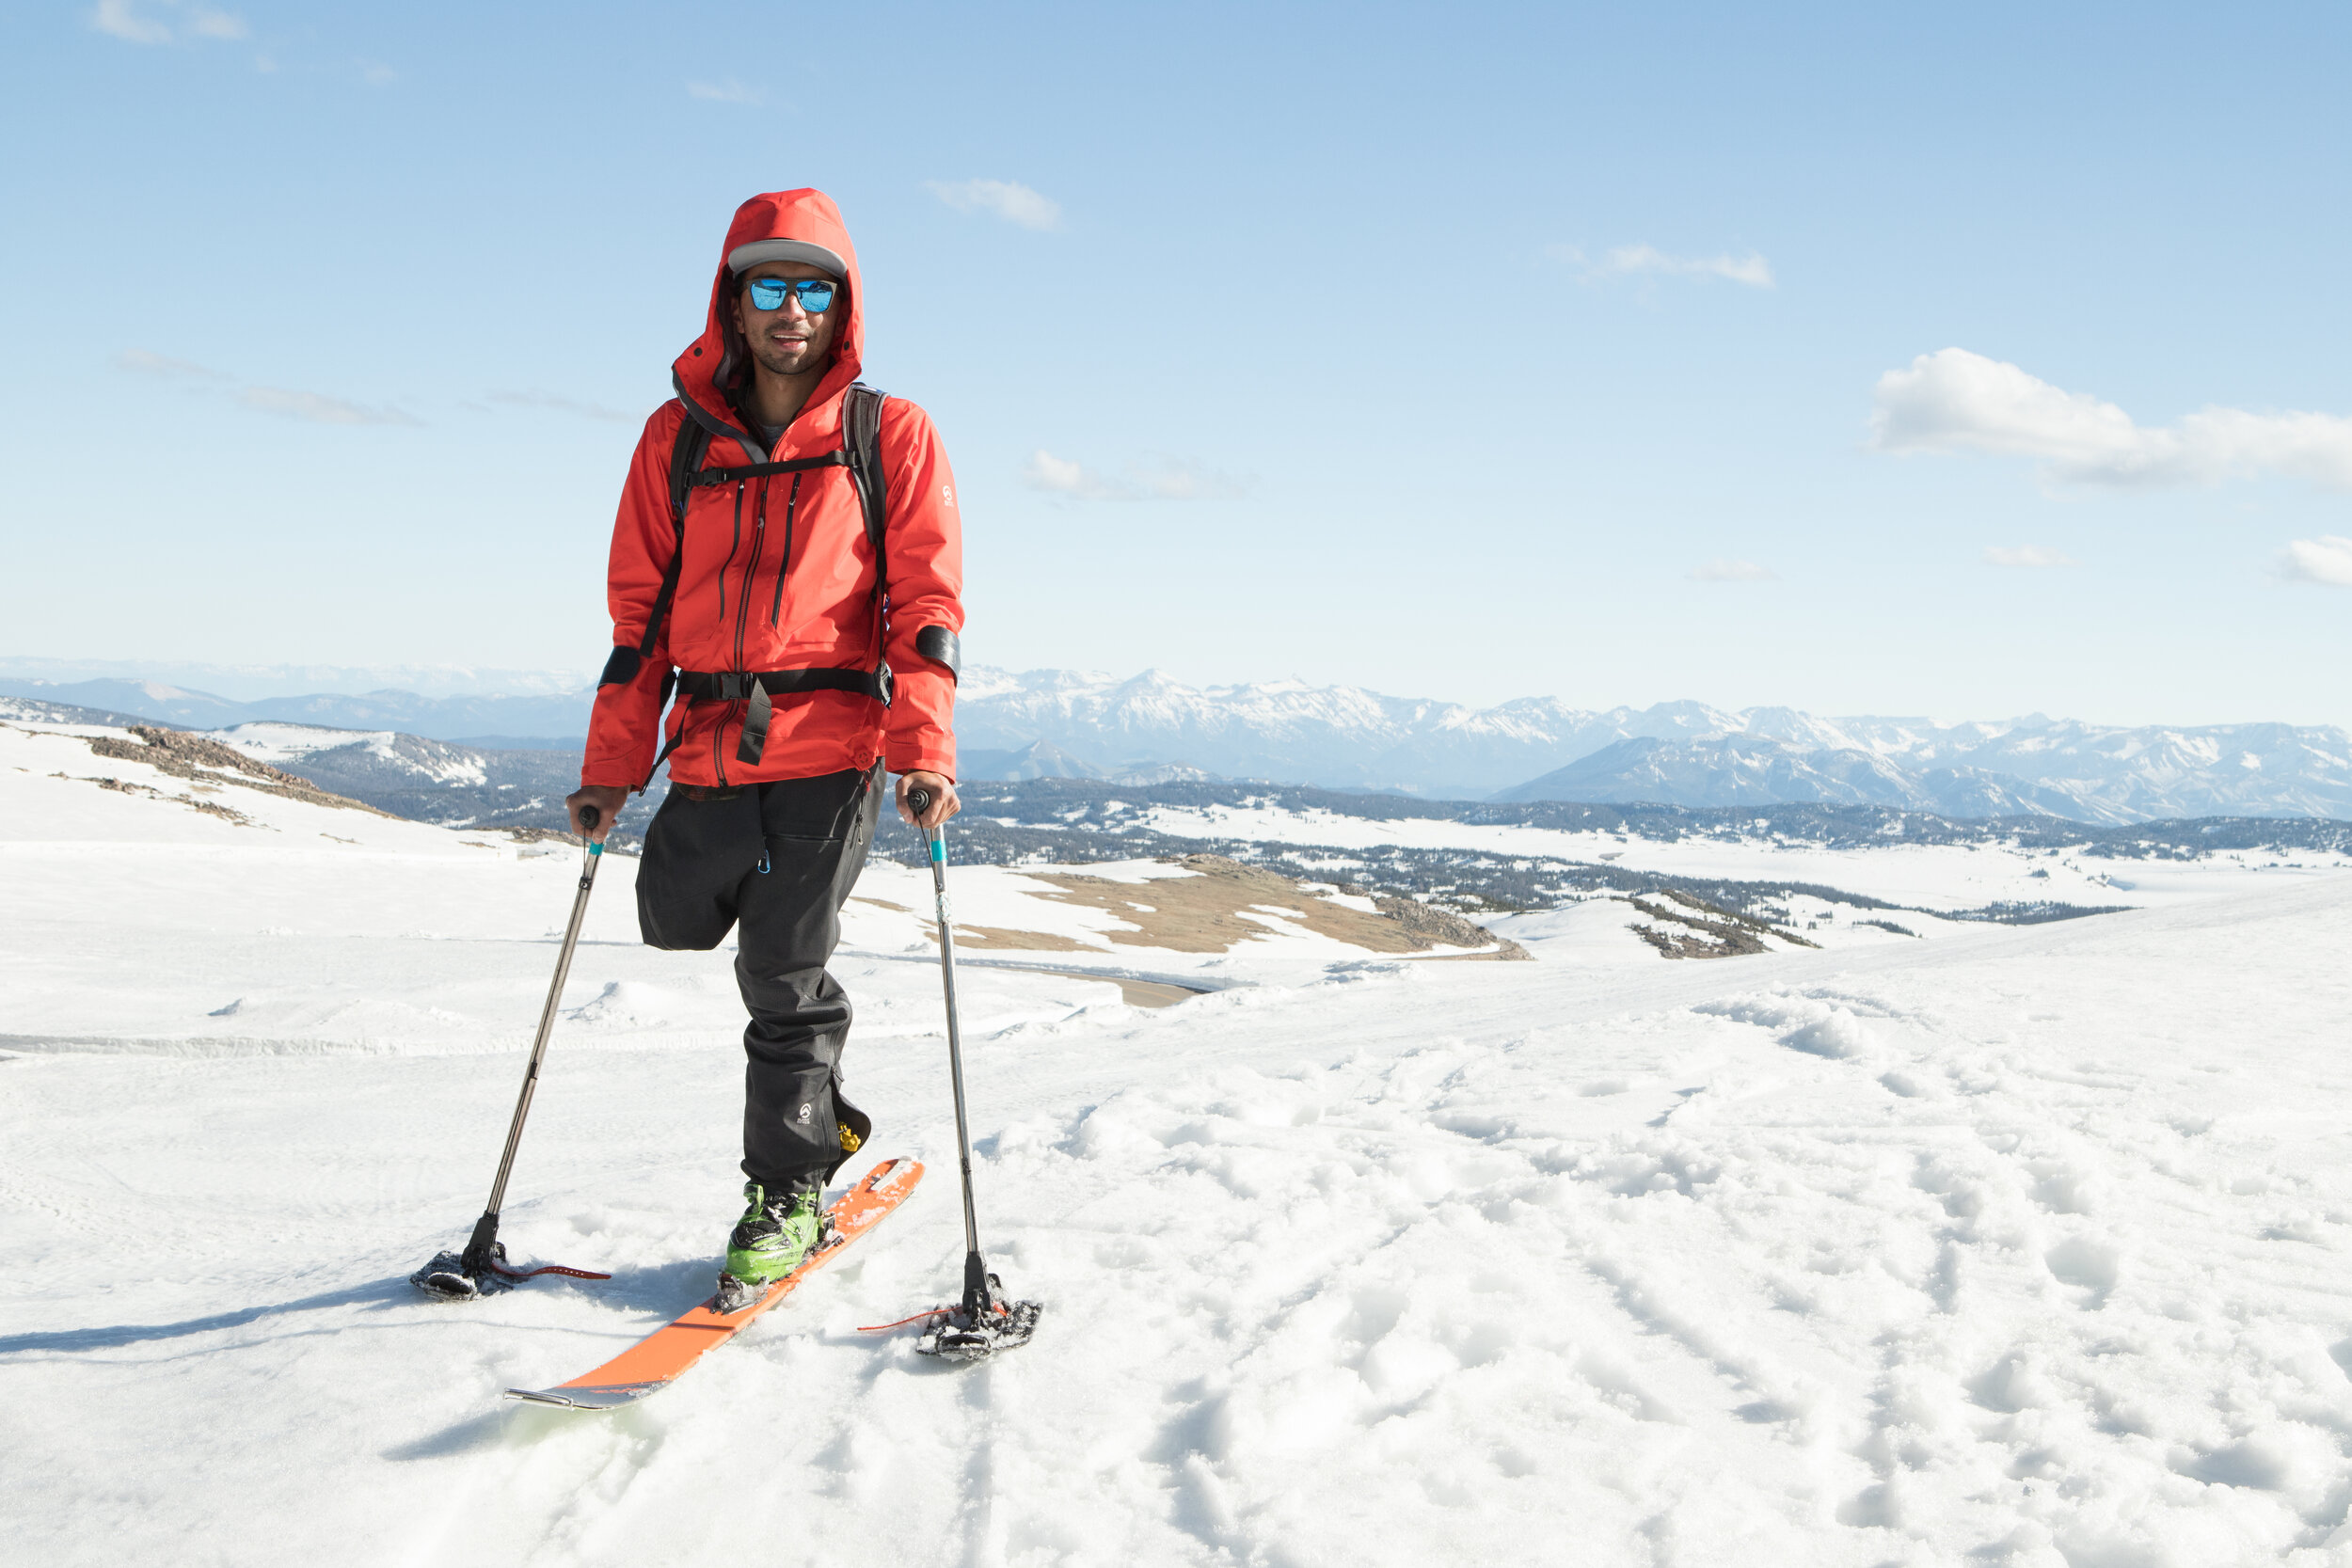 Vasu on a mountain with his ski